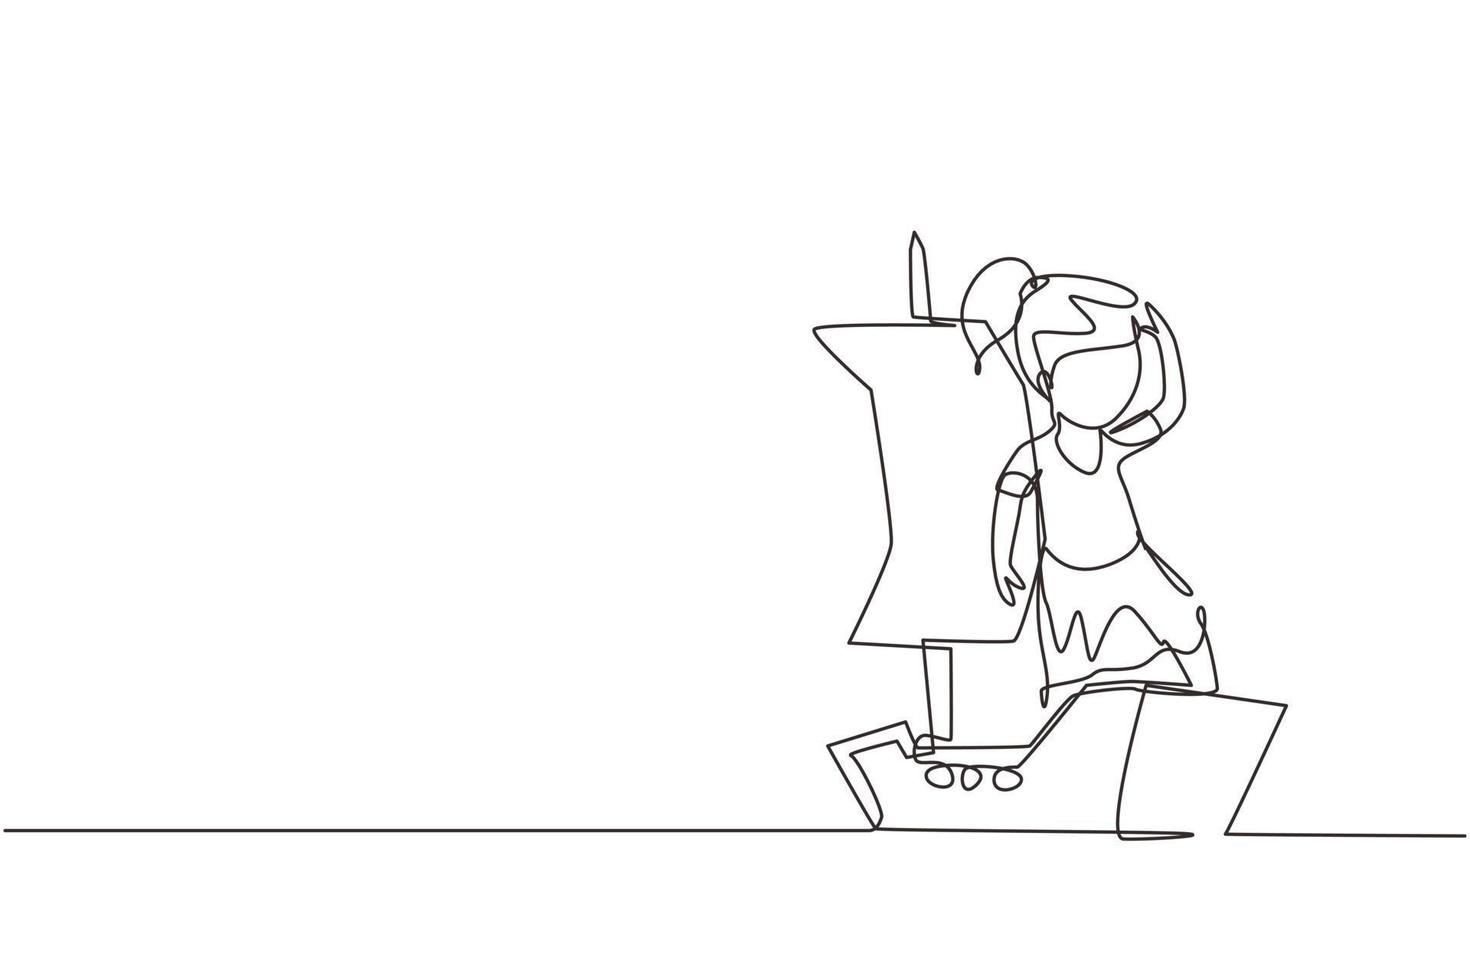 einzelne durchgehende Linienzeichnung kleines Mädchen, das Seemann mit Boot aus Karton spielt. kreative kinderfigur, die schiff aus pappkartons spielt. eine linie zeichnen grafikdesign-vektorillustration vektor